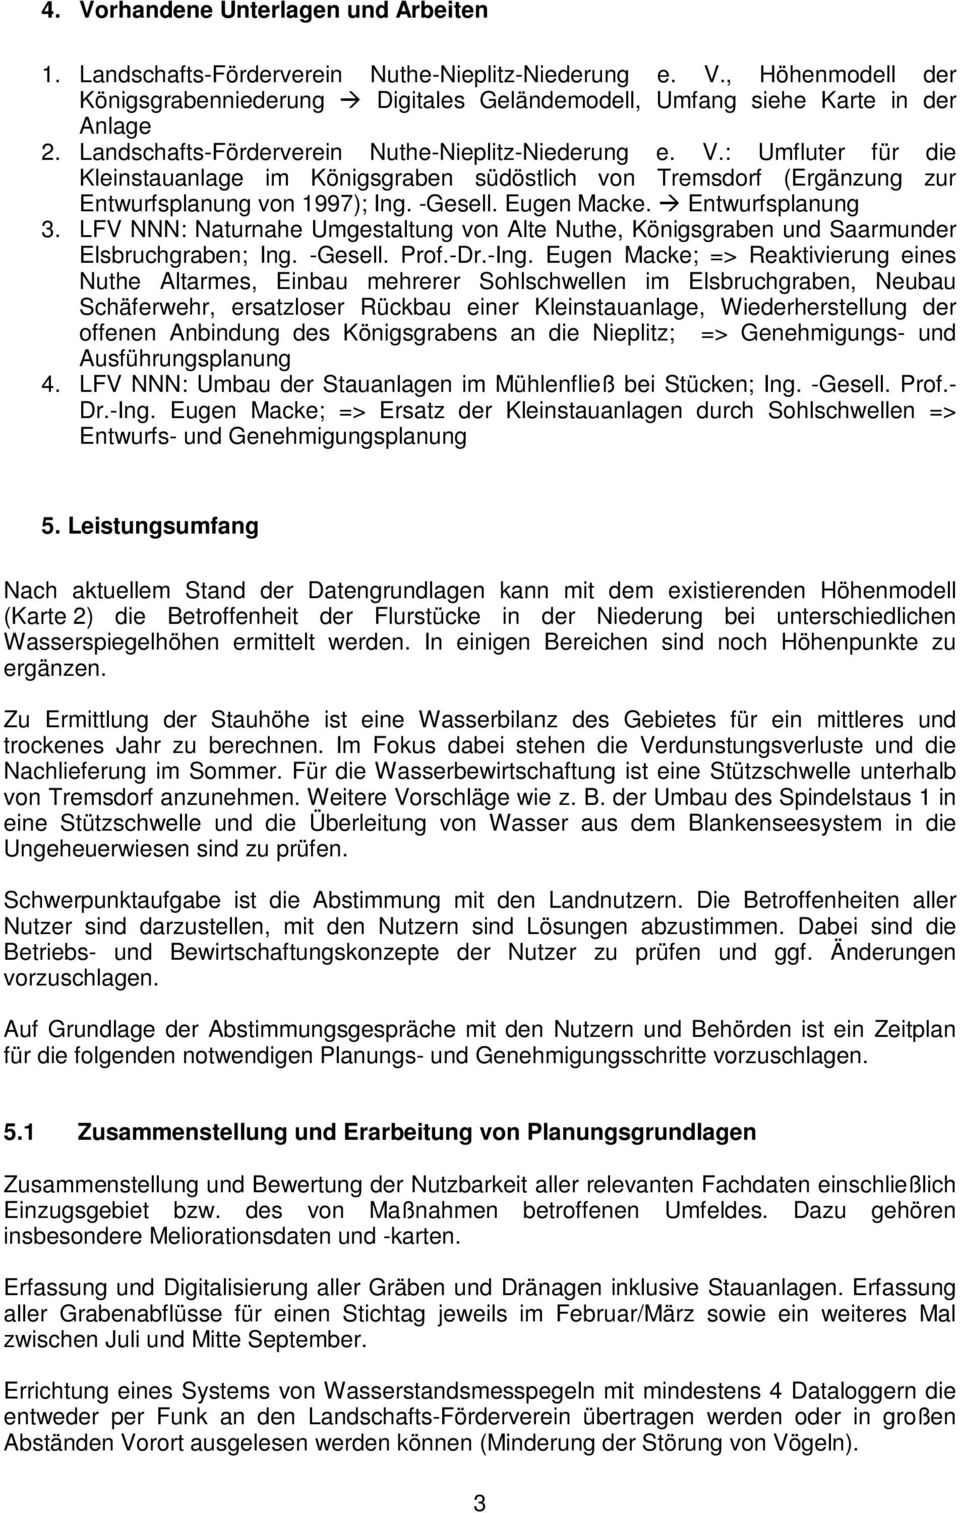 Entwurfsplanung 3. LFV NNN: Naturnahe Umgestaltung von Alte Nuthe, Königsgraben und Saarmunder Elsbruchgraben; Ing. -Gesell. Prof.-Dr.-Ing.